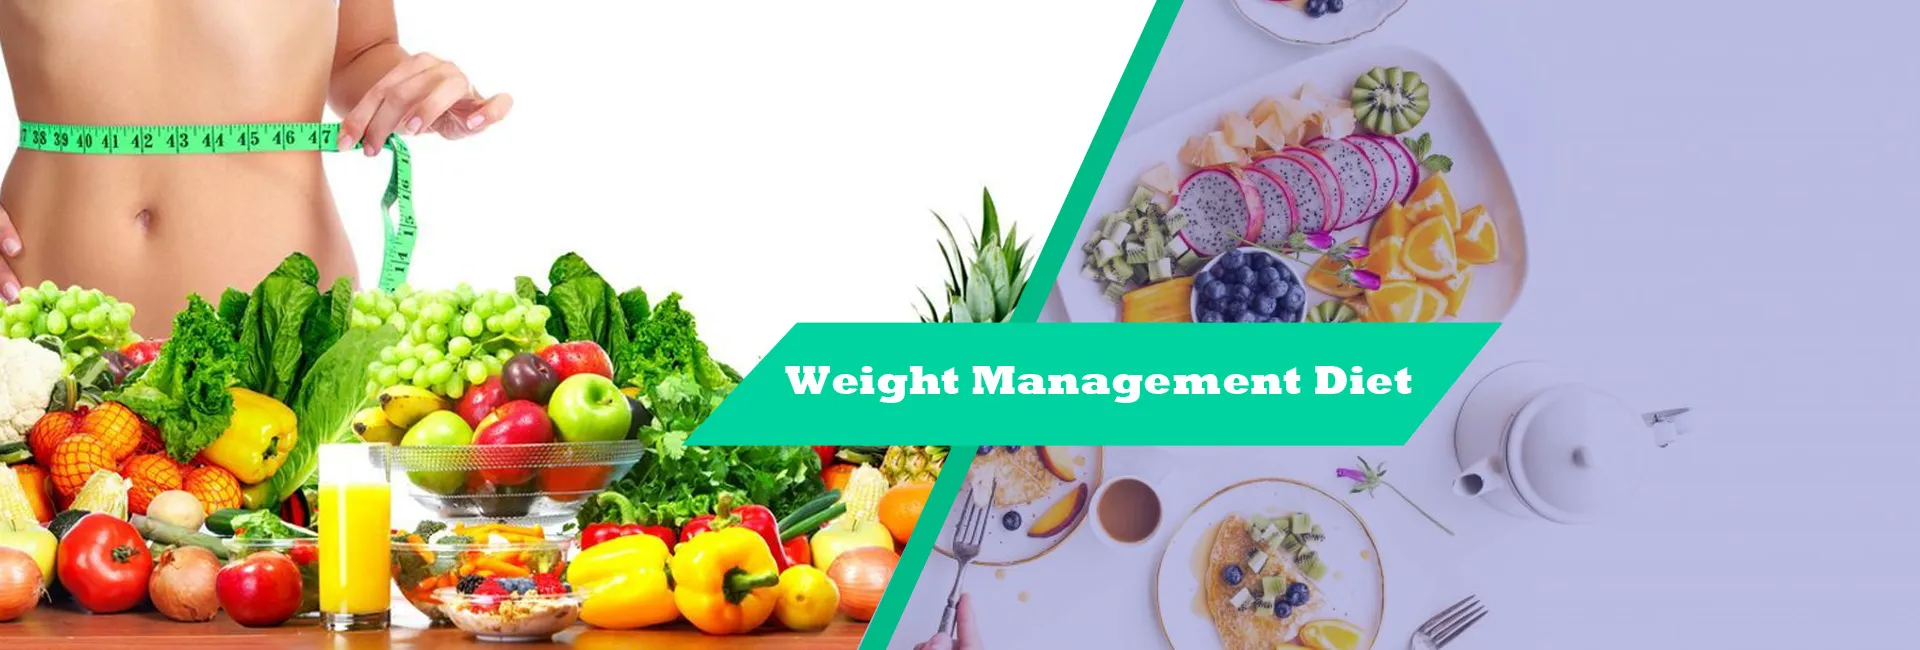 Weight Management Diet